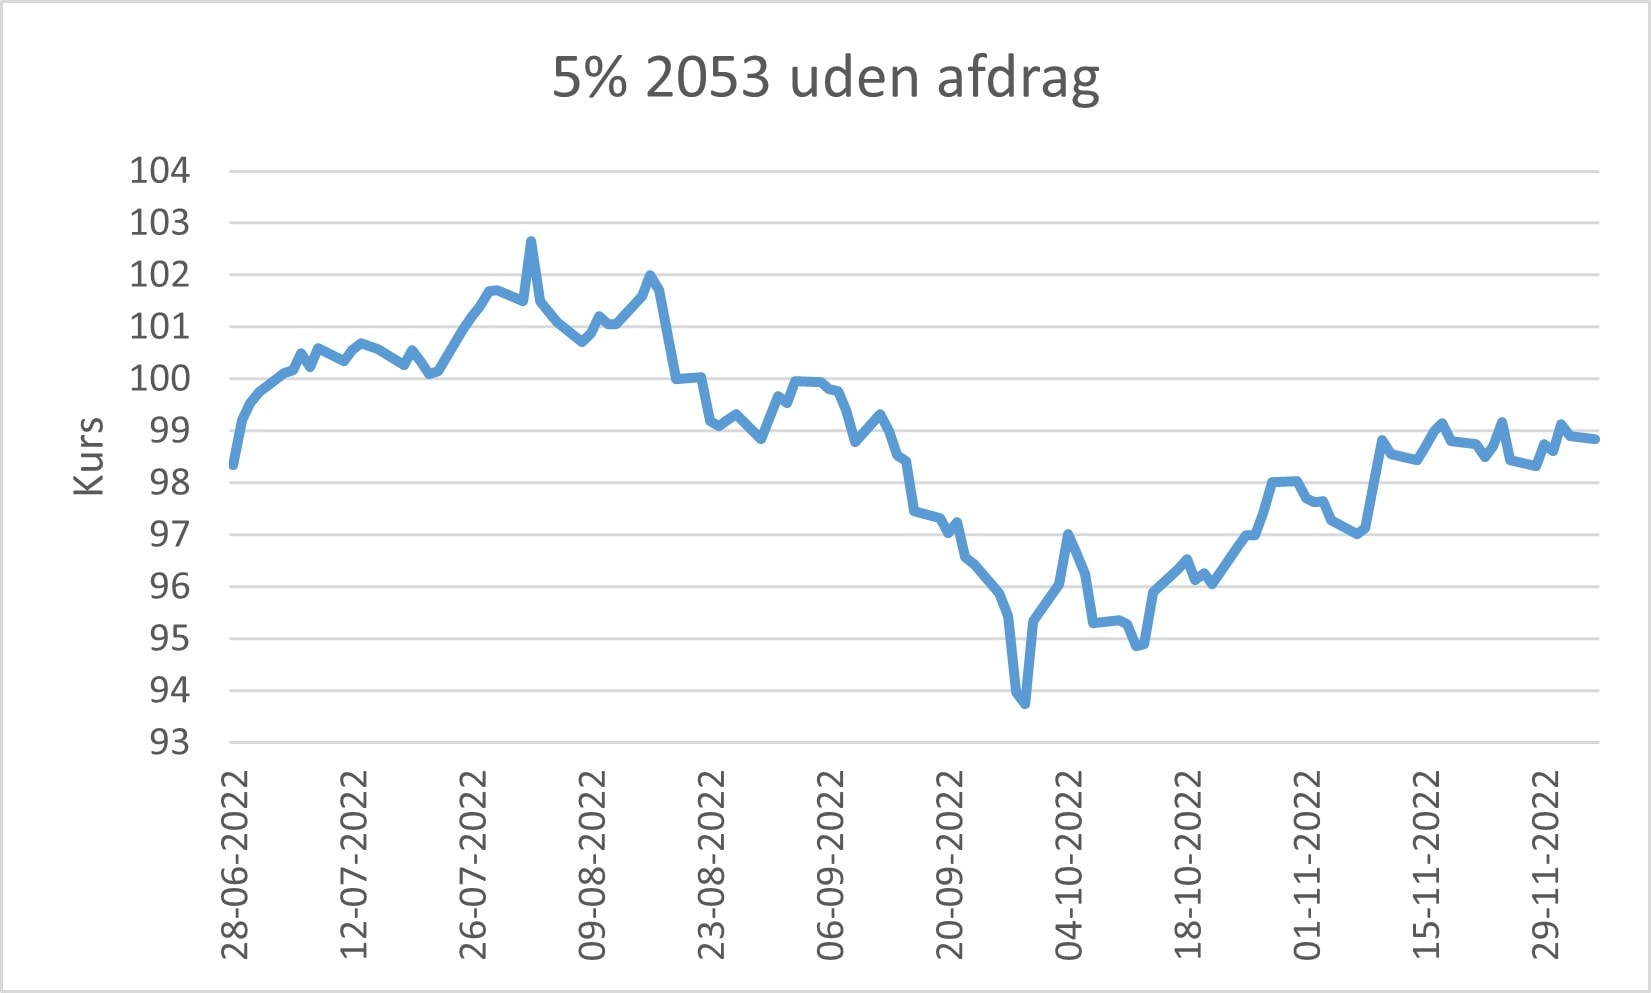 Graf over udviklingen af 5% 2053 uden afdrag